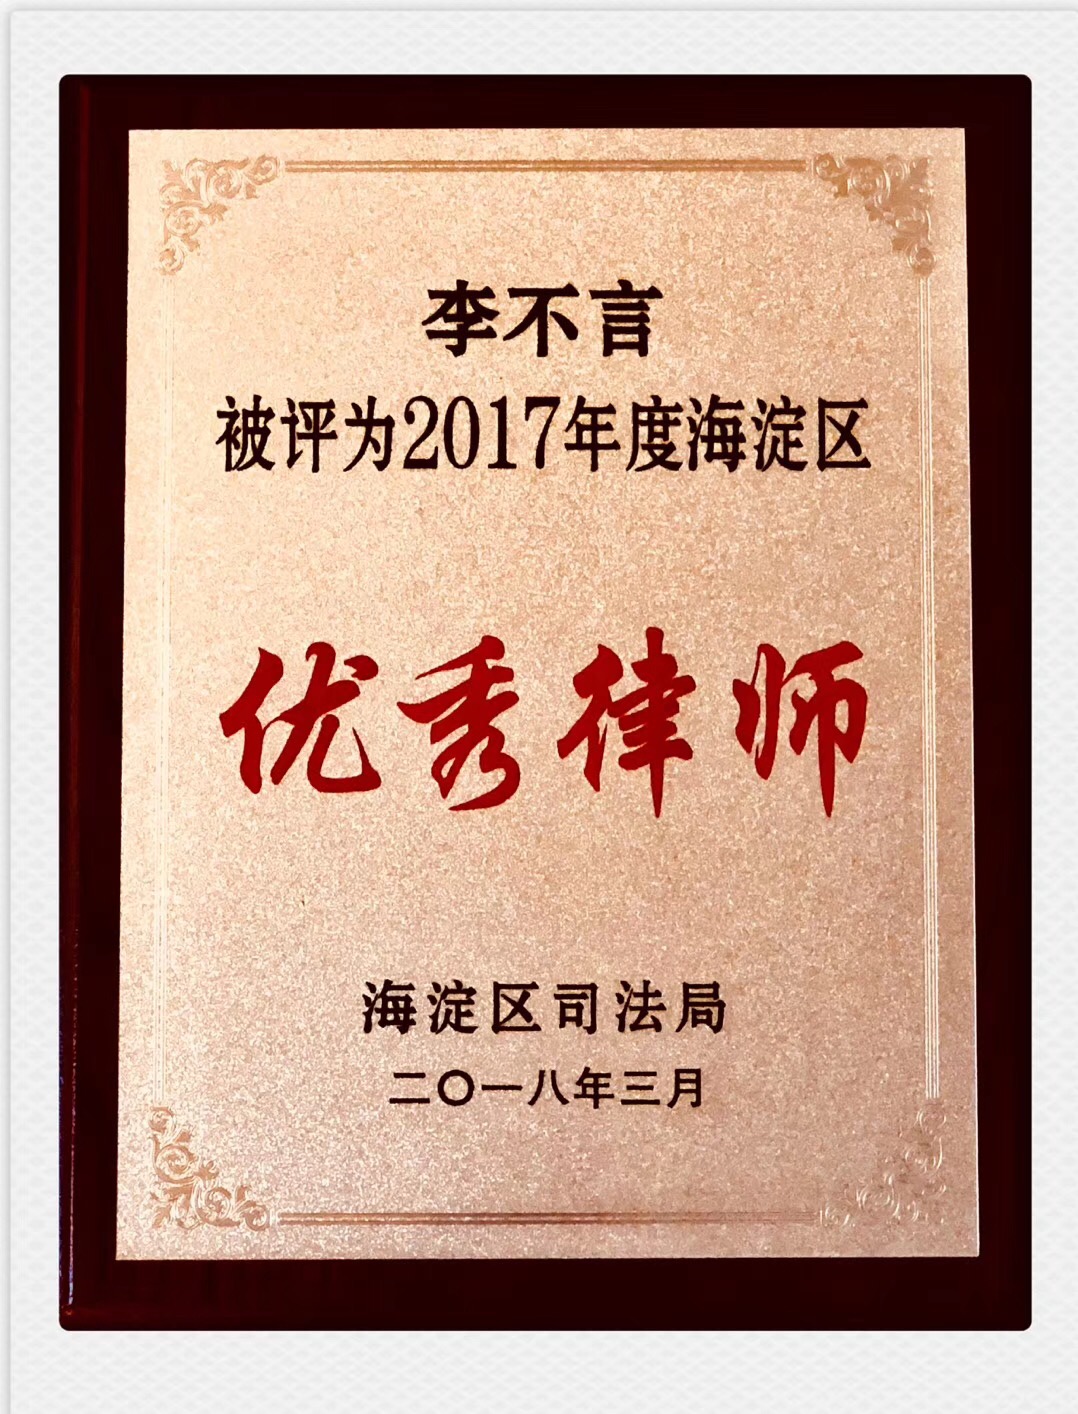 祝贺我所訾英韬律师、李不言律师荣获“2017年海淀区优秀律师”的称号(图1)